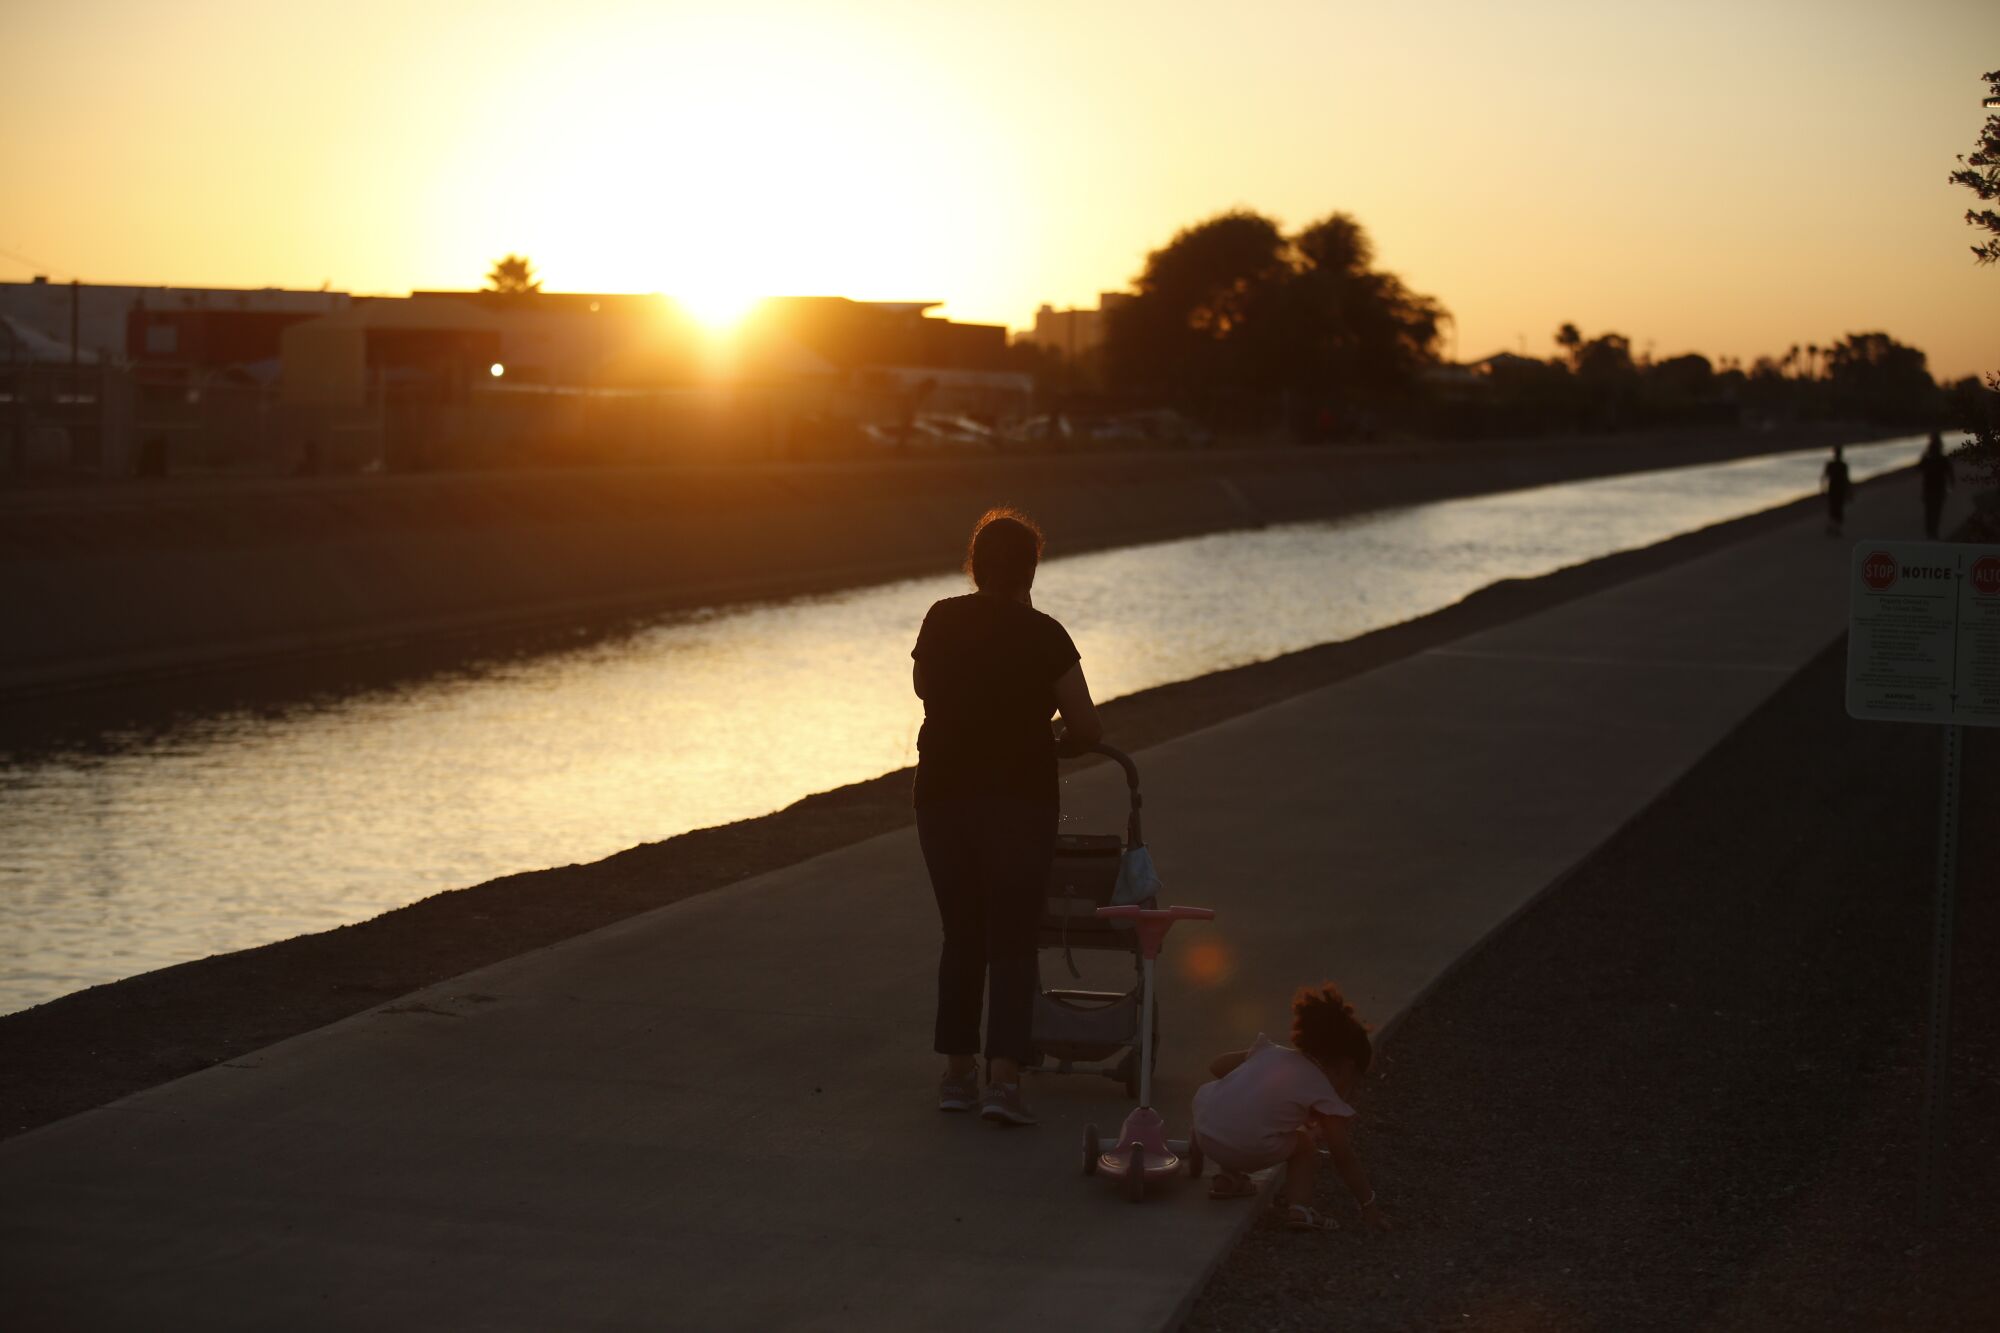 Ein Kleinkind hockt und greift nach etwas abseits des Weges, während es einer Frau folgt, die bei Sonnenuntergang einen Wasserweg entlang geht